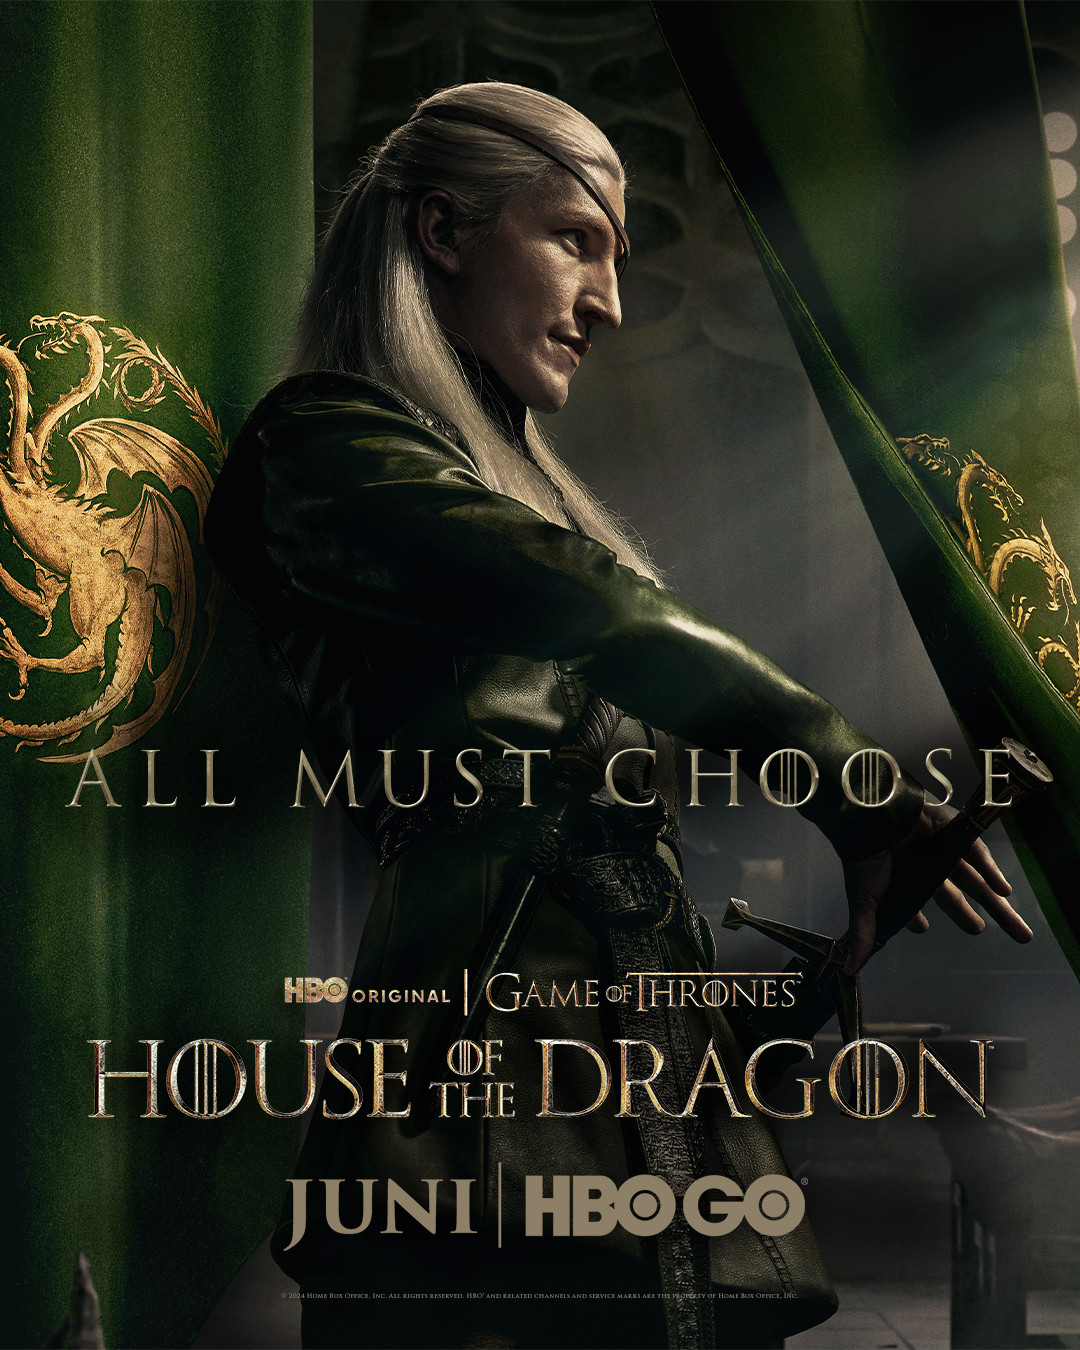 "House Of The Dragon" Debut 17 Juni Mendatang Di Hbo & Hbo Go